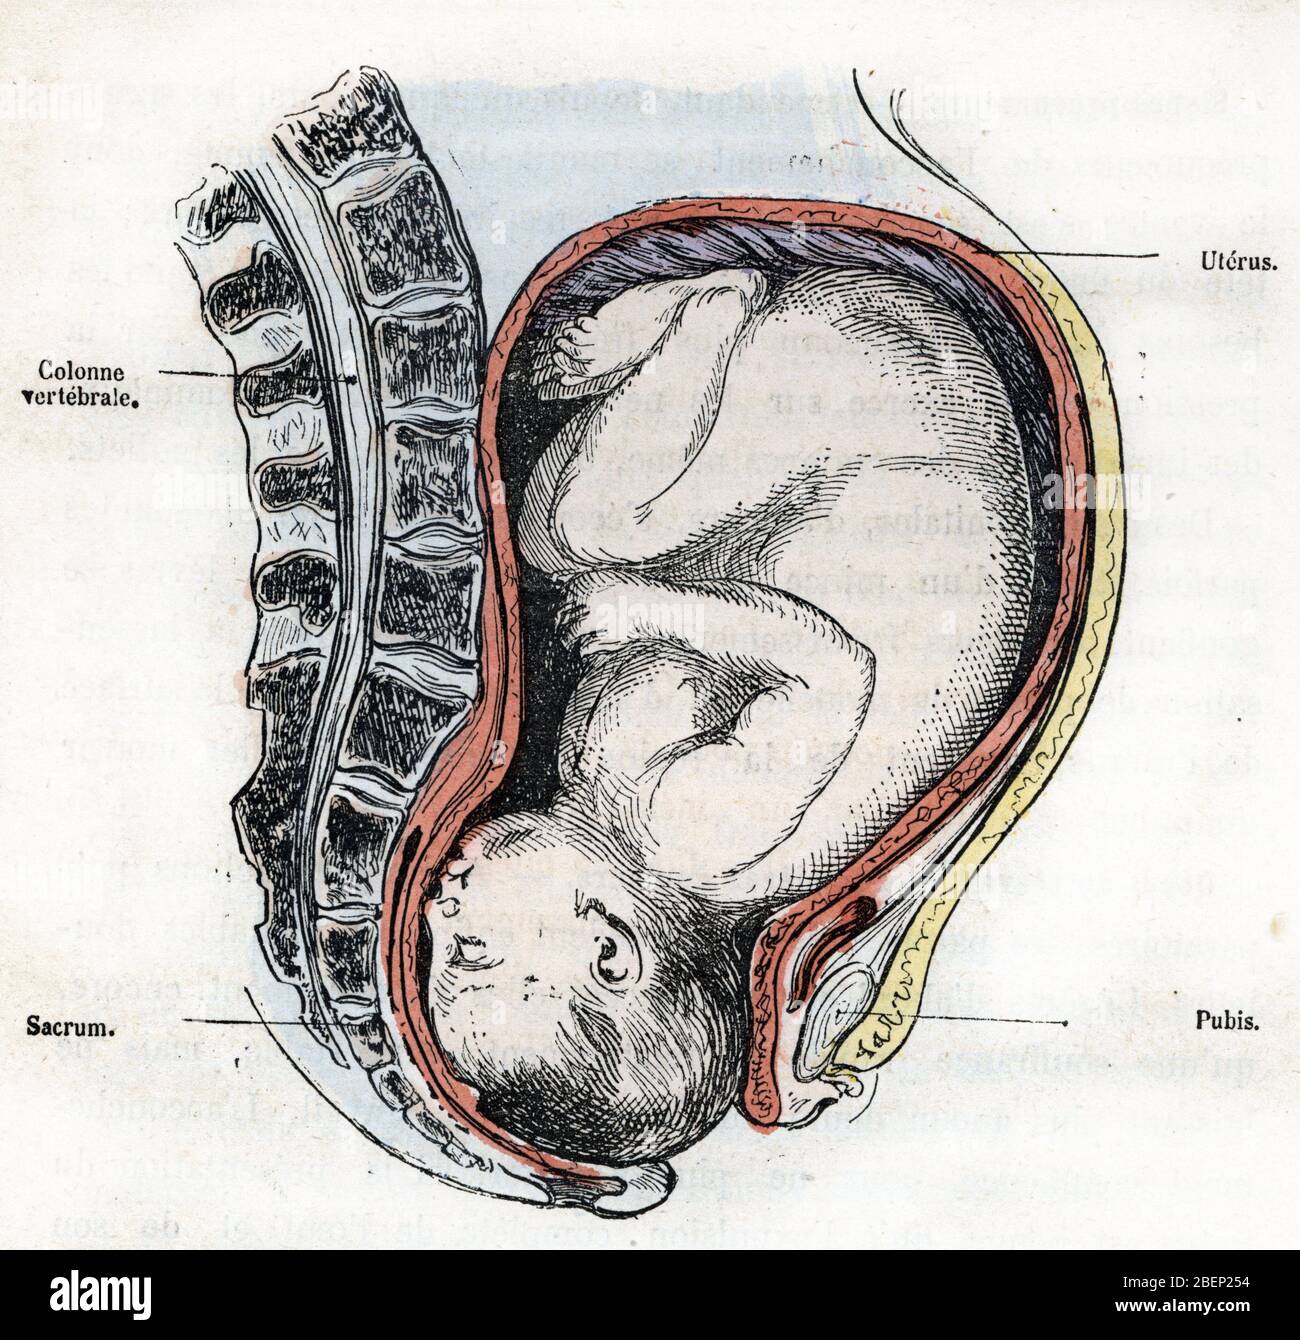 Representation de la position correcte du foetus au moment de l'accouchement (Representation of the correct position of the fetus at the time of deliv Stock Photo